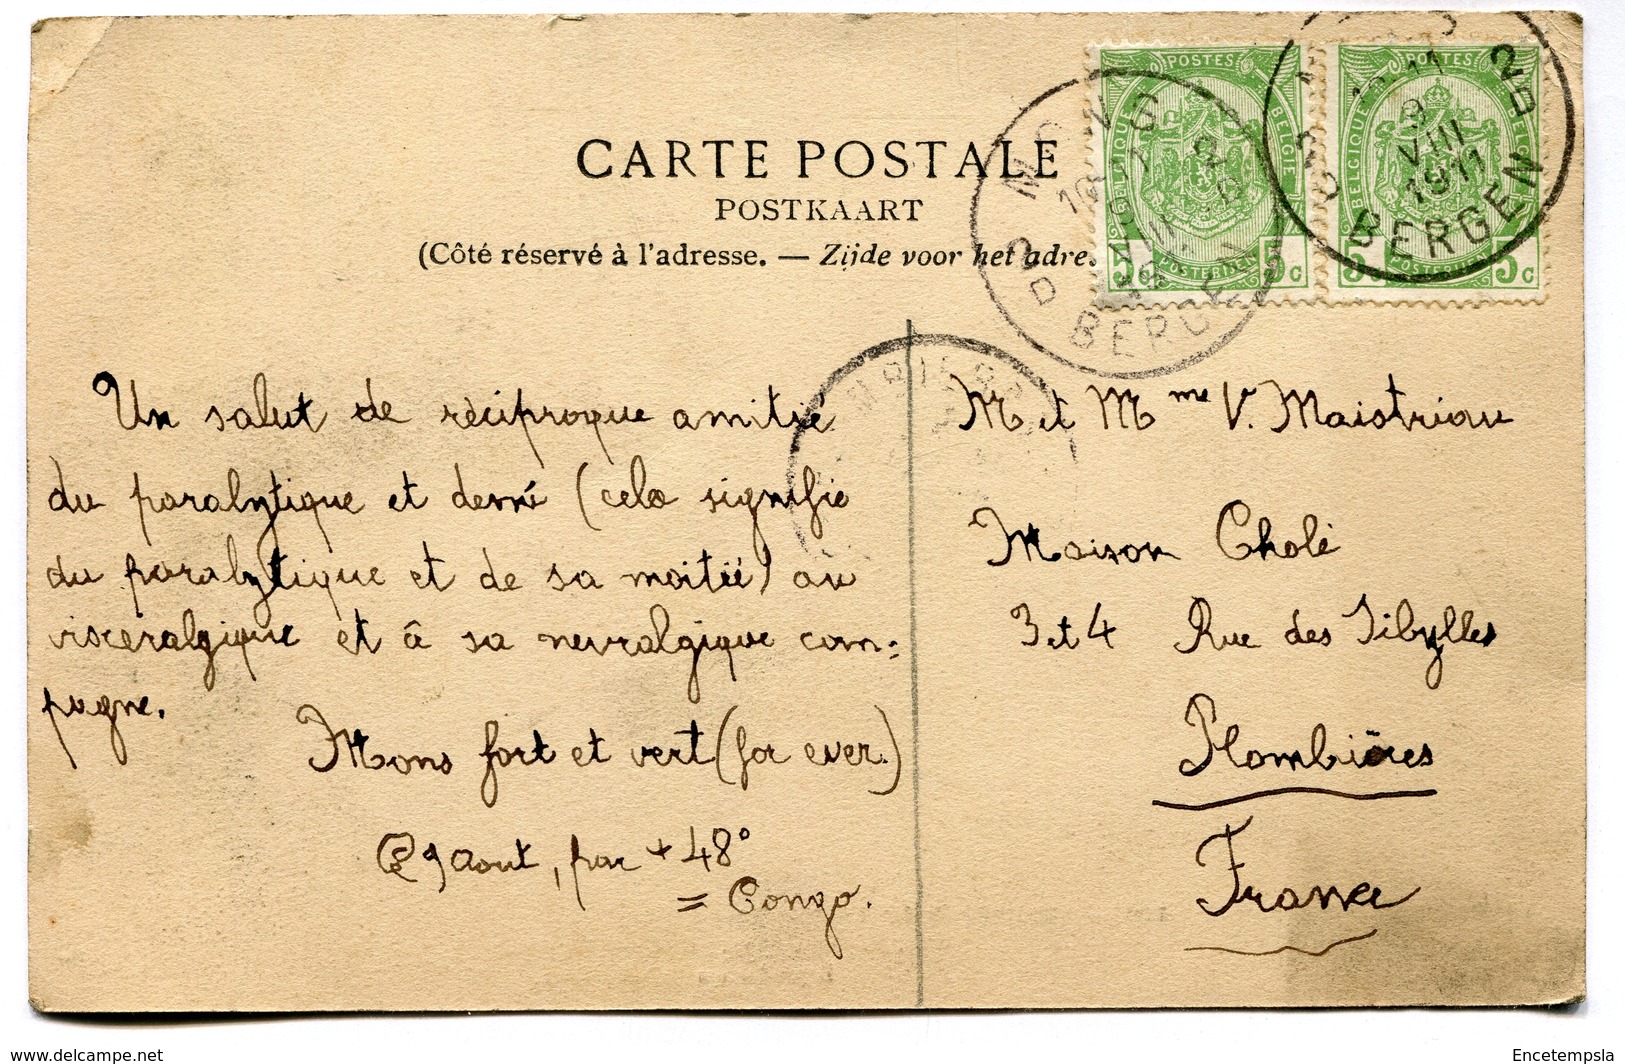 CPA - Carte Postale - Belgique - La Cour Bonaparte - Souvenir De La Malmaison - 1911 (I12616) - Fauvillers